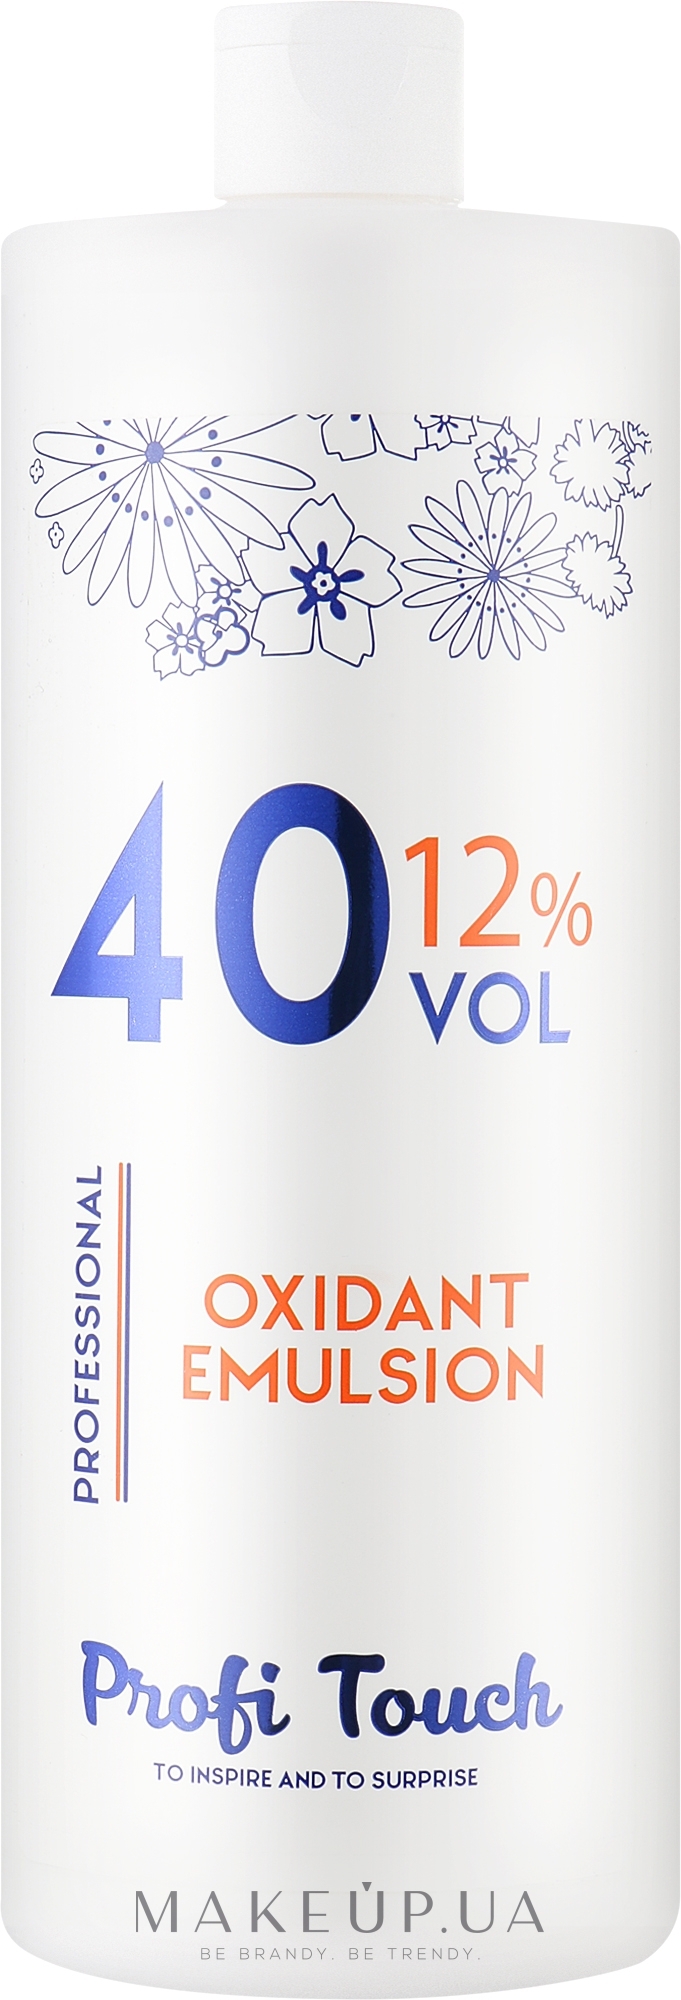 Гель-окислювач 40 vol 12% - Profi Touch Oxidant Emulsion — фото 1000g